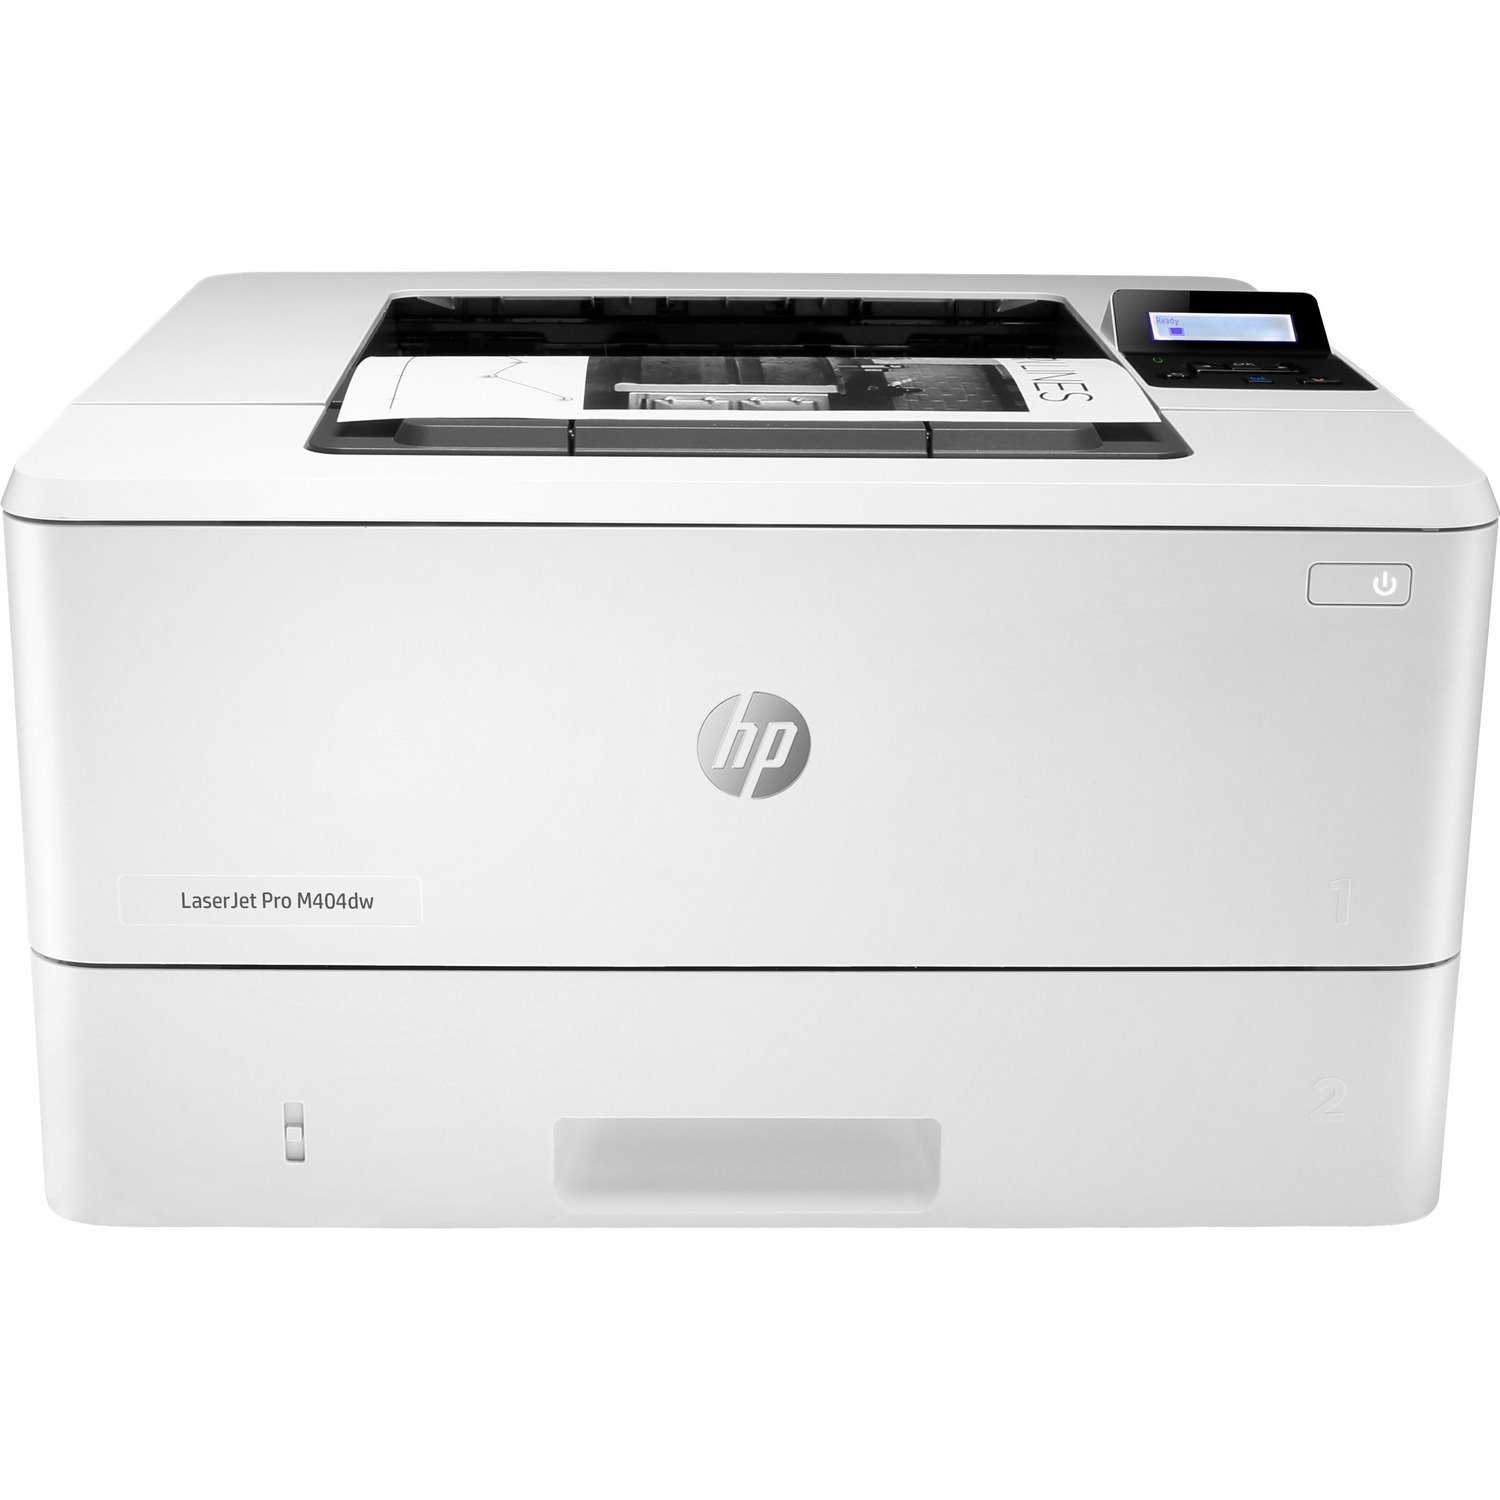 HP LaserJet Pro M404 M404dw Desktop Laser Printer - Monochrome si besoin bac D9P29A